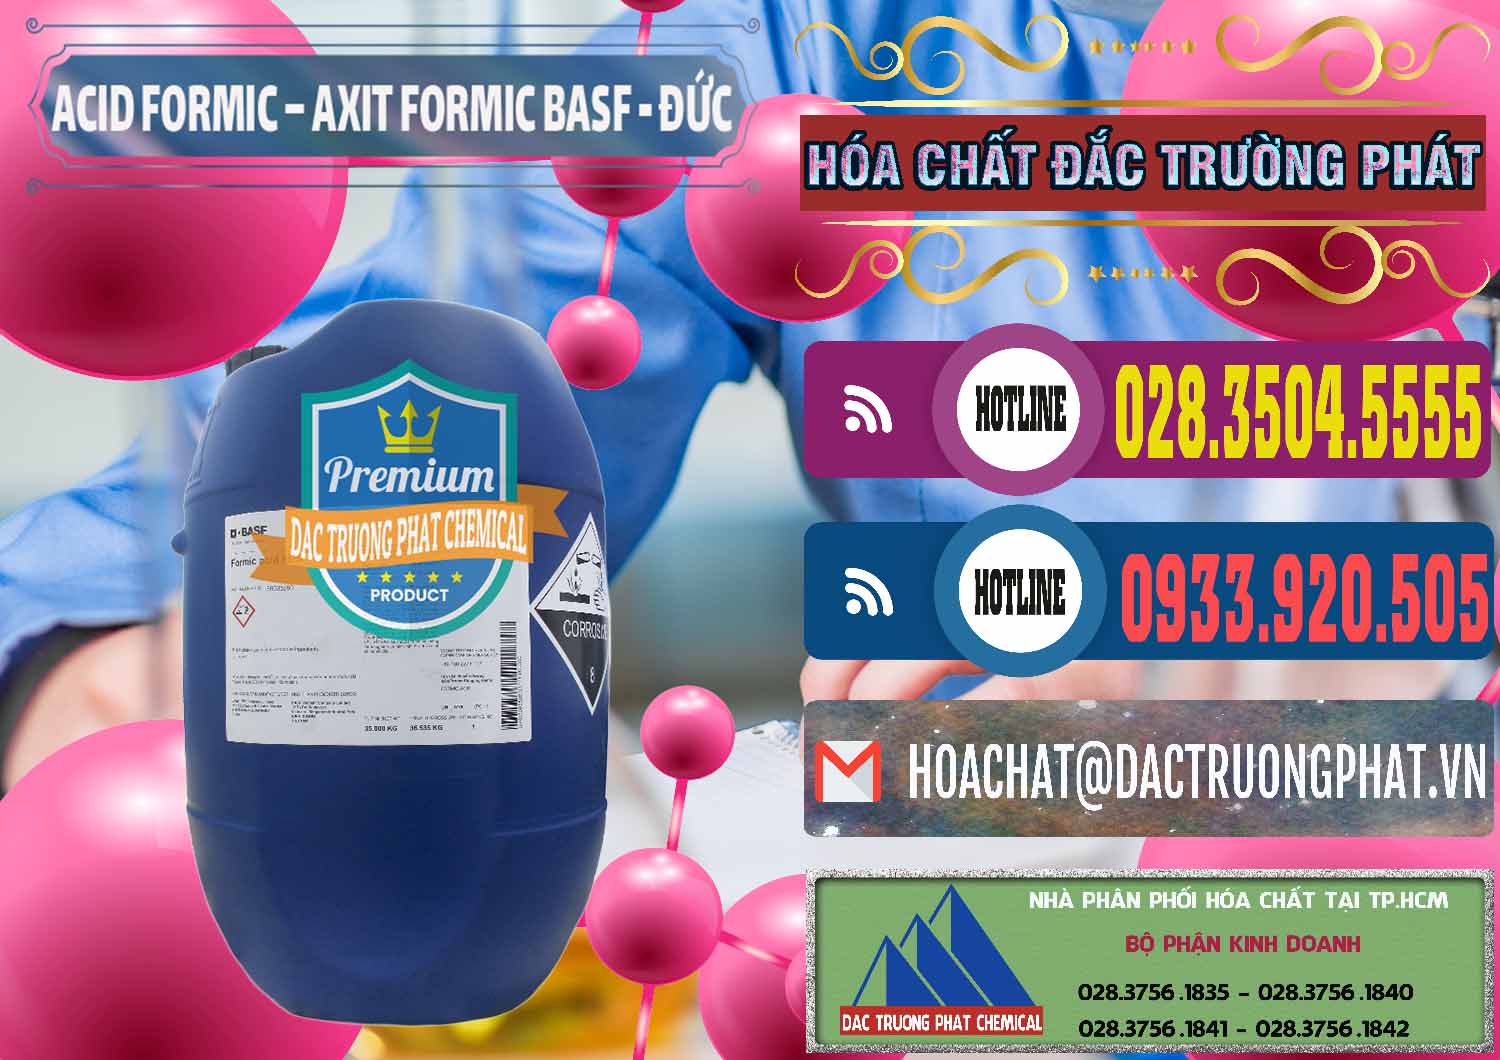 Nơi cung ứng và bán Acid Formic - Axit Formic BASF Đức Germany - 0028 - Chuyên bán ( phân phối ) hóa chất tại TP.HCM - muabanhoachat.com.vn